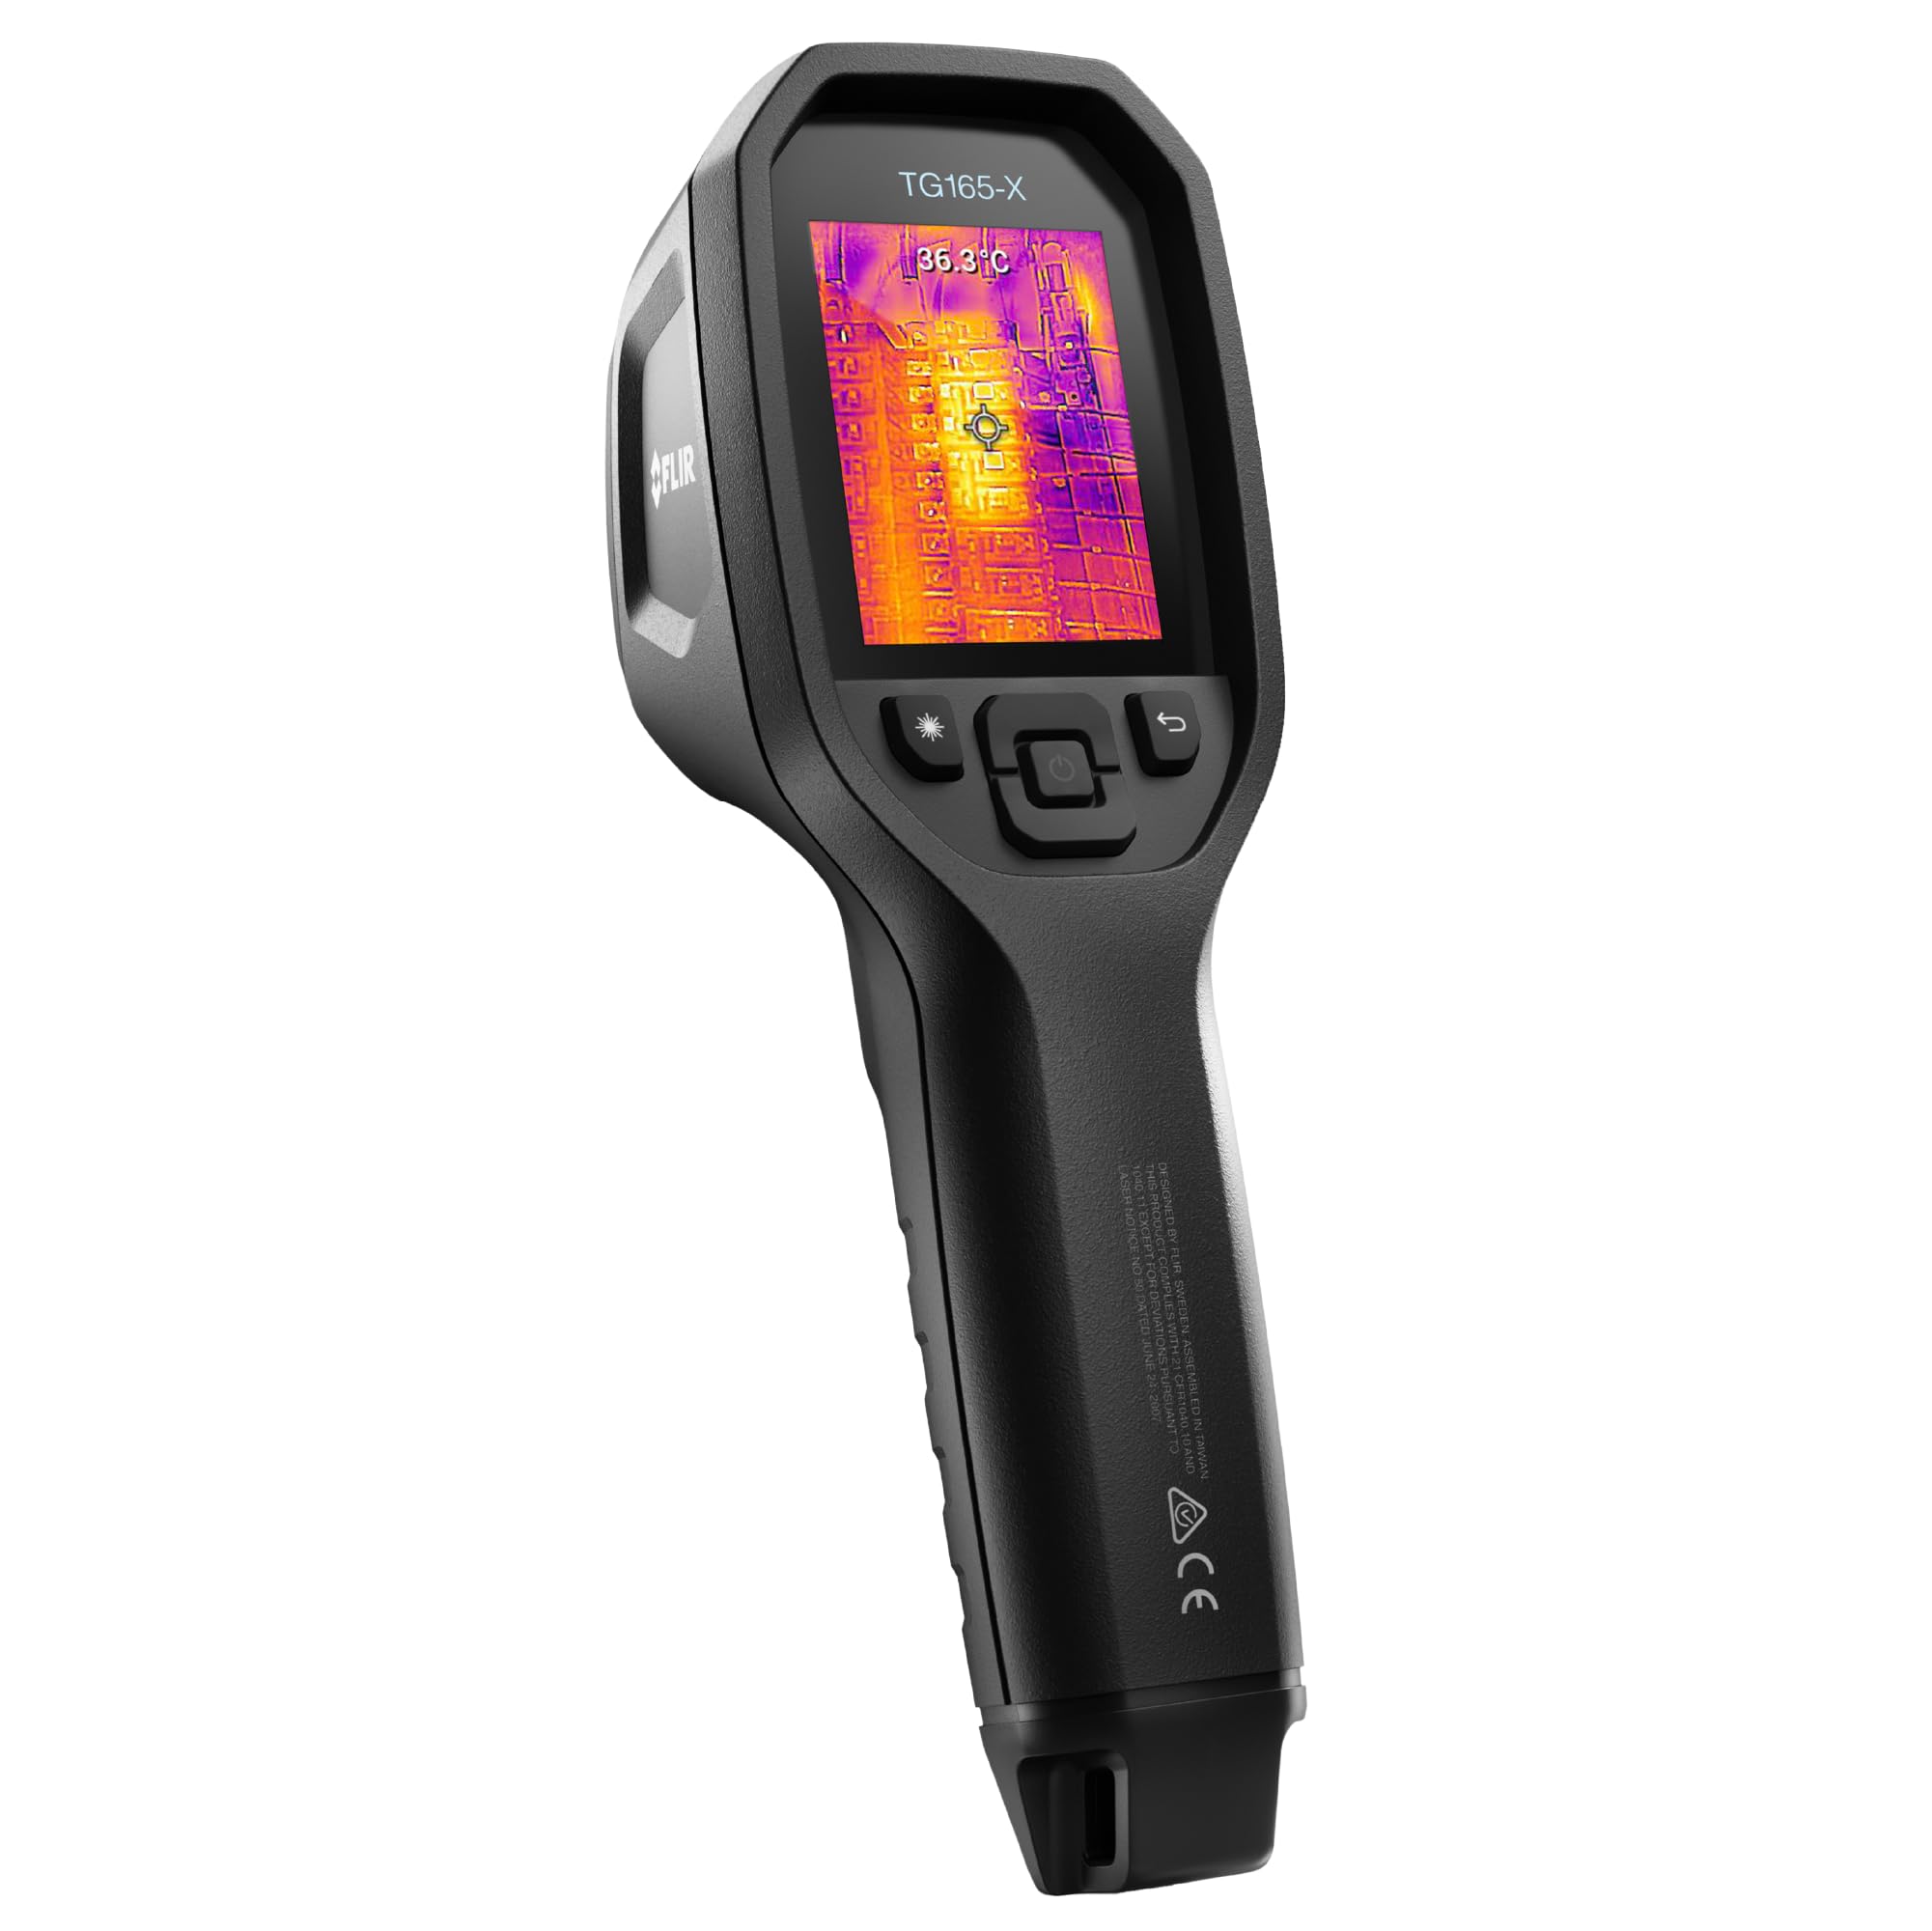 FLIR TG165-X Thermal Imaging Camera $299